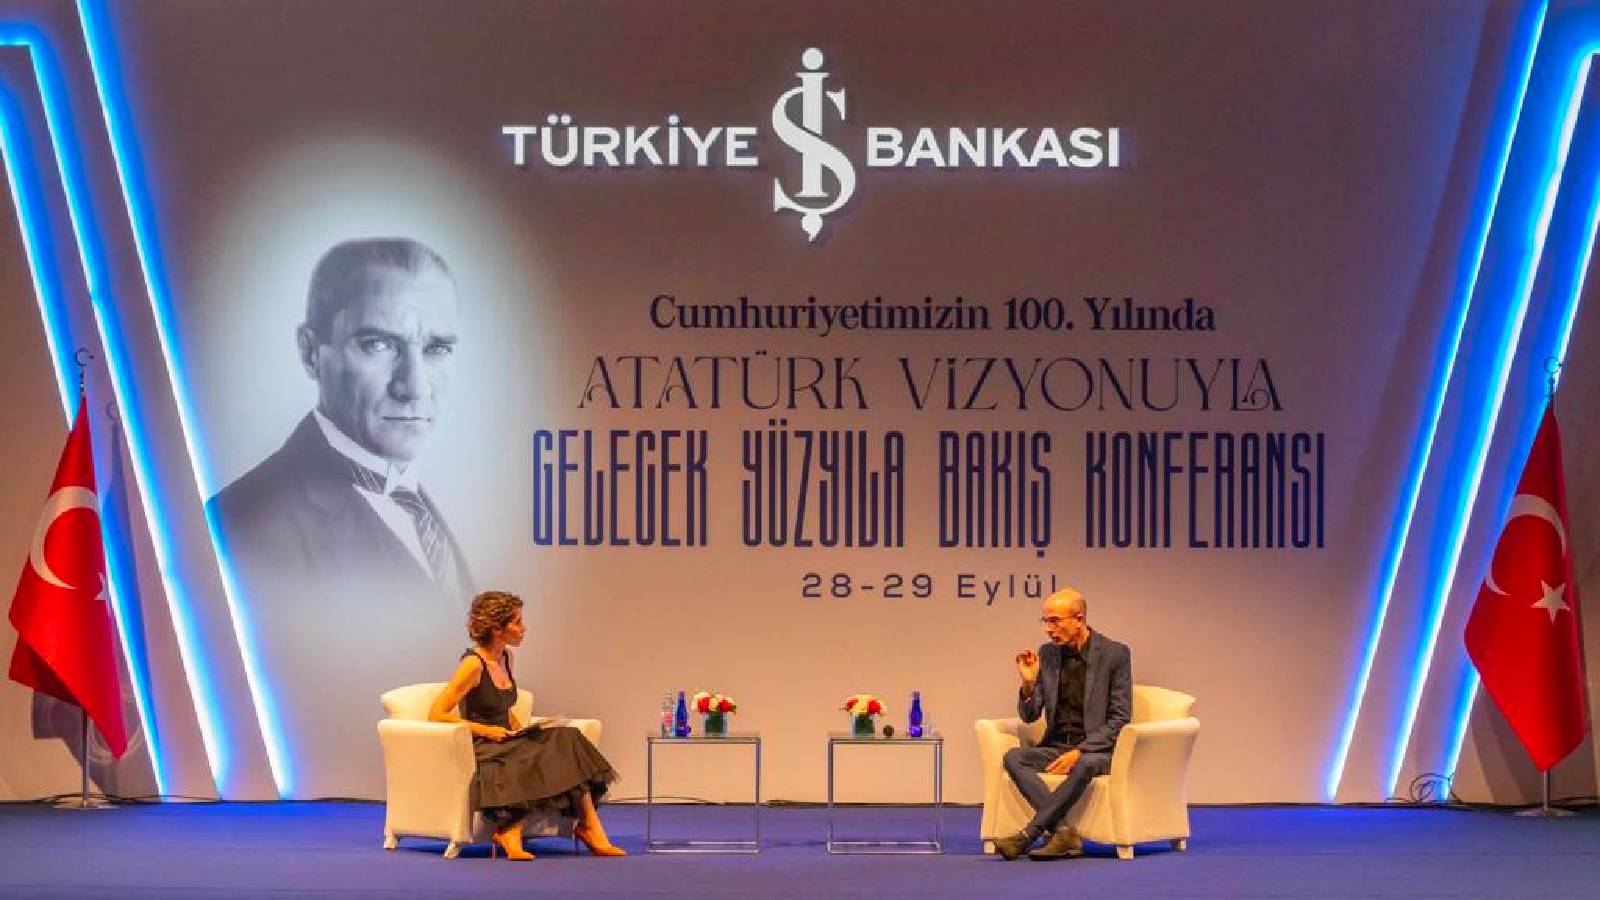 Harari, Atatürk Vizyonuyla Gelecek Yüzyıla Bakış konferansında: Atatürk eskiye bakmadı ve gelecek için bir vizyon oluşturdu, bu ruha artık de gereksinimimiz var